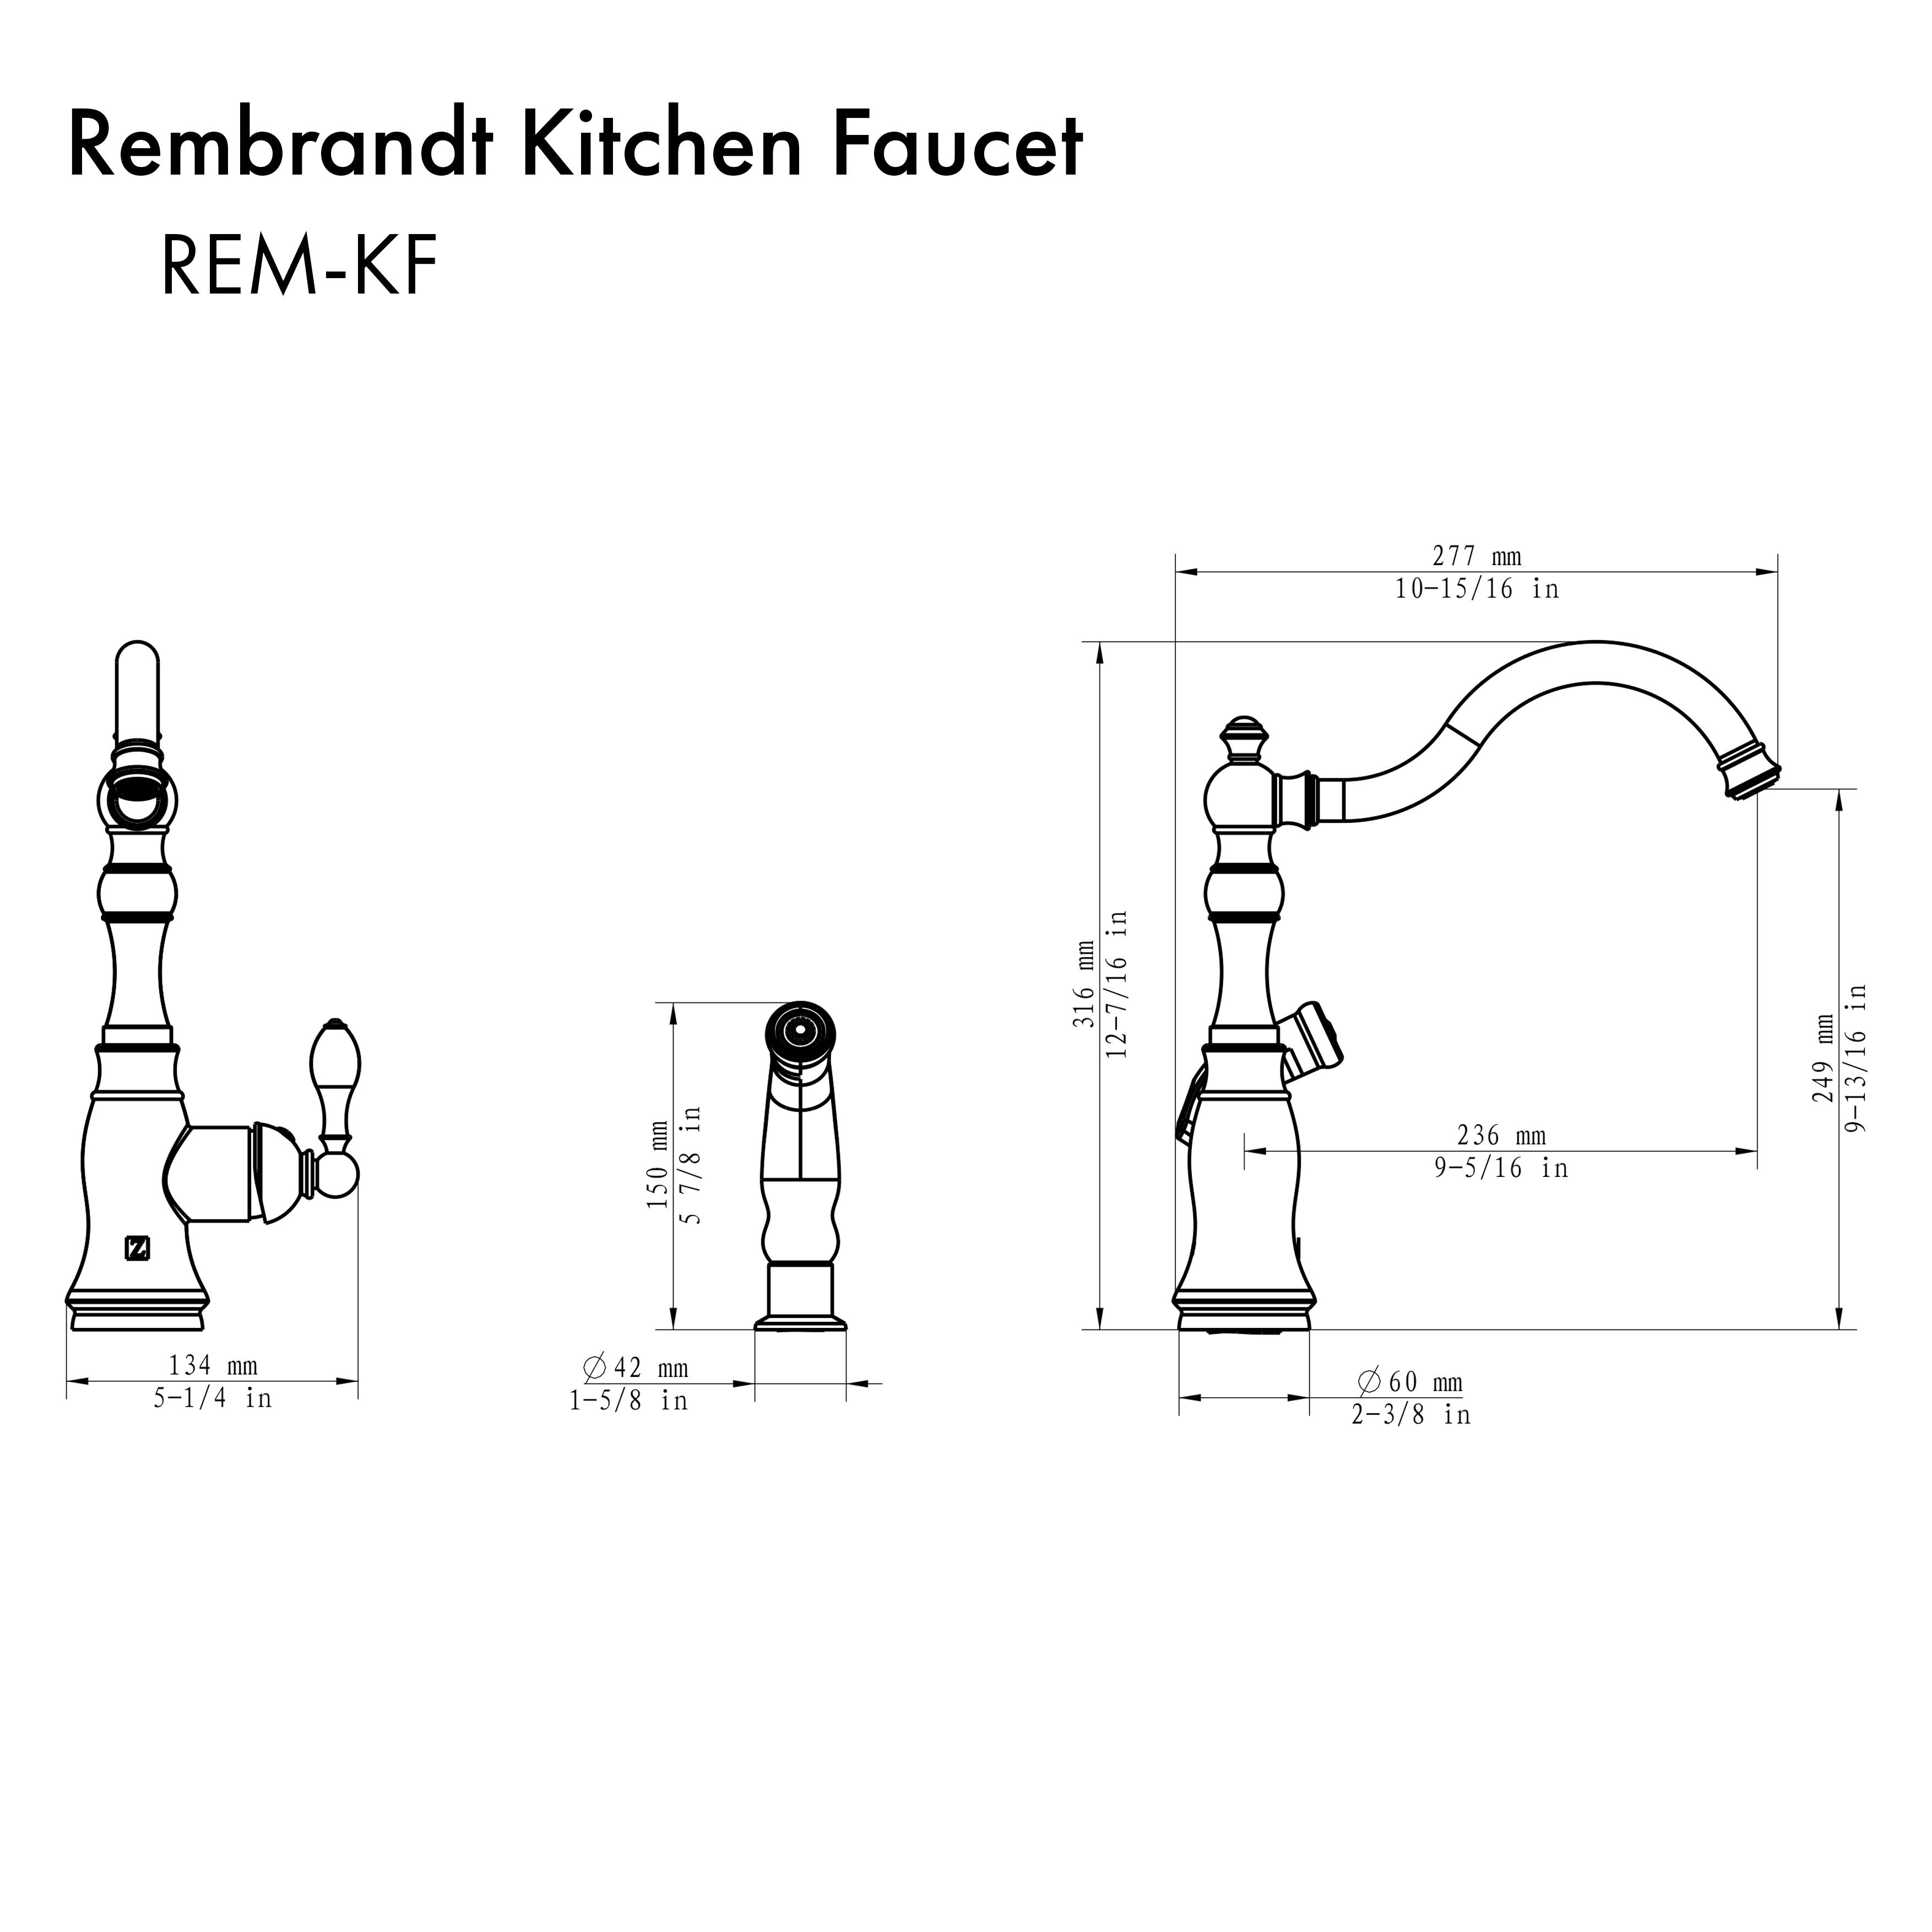 ZLINE Rembrandt Kitchen Faucet in Matte Black (REM-KF-MB)